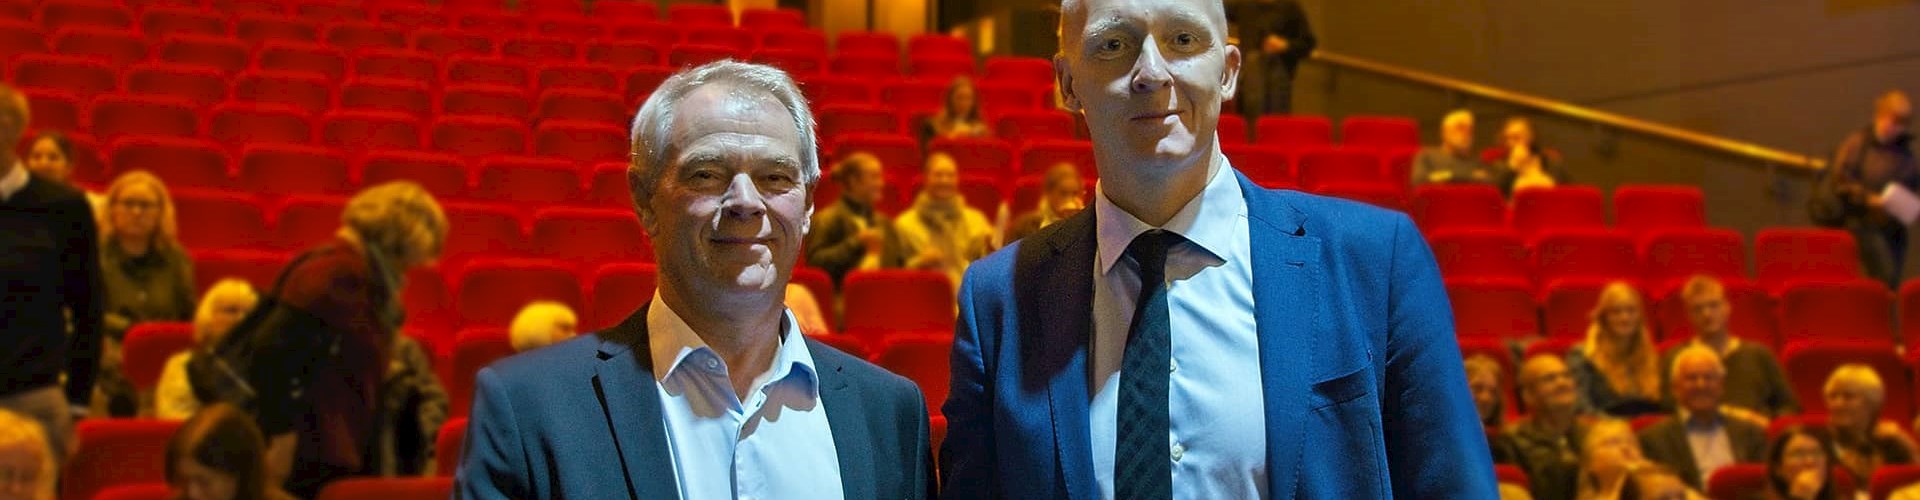 Jens Møller og Jakob Buch-Jepsen i foredraget Fra anholdelse til dom hos FOF Aarhus